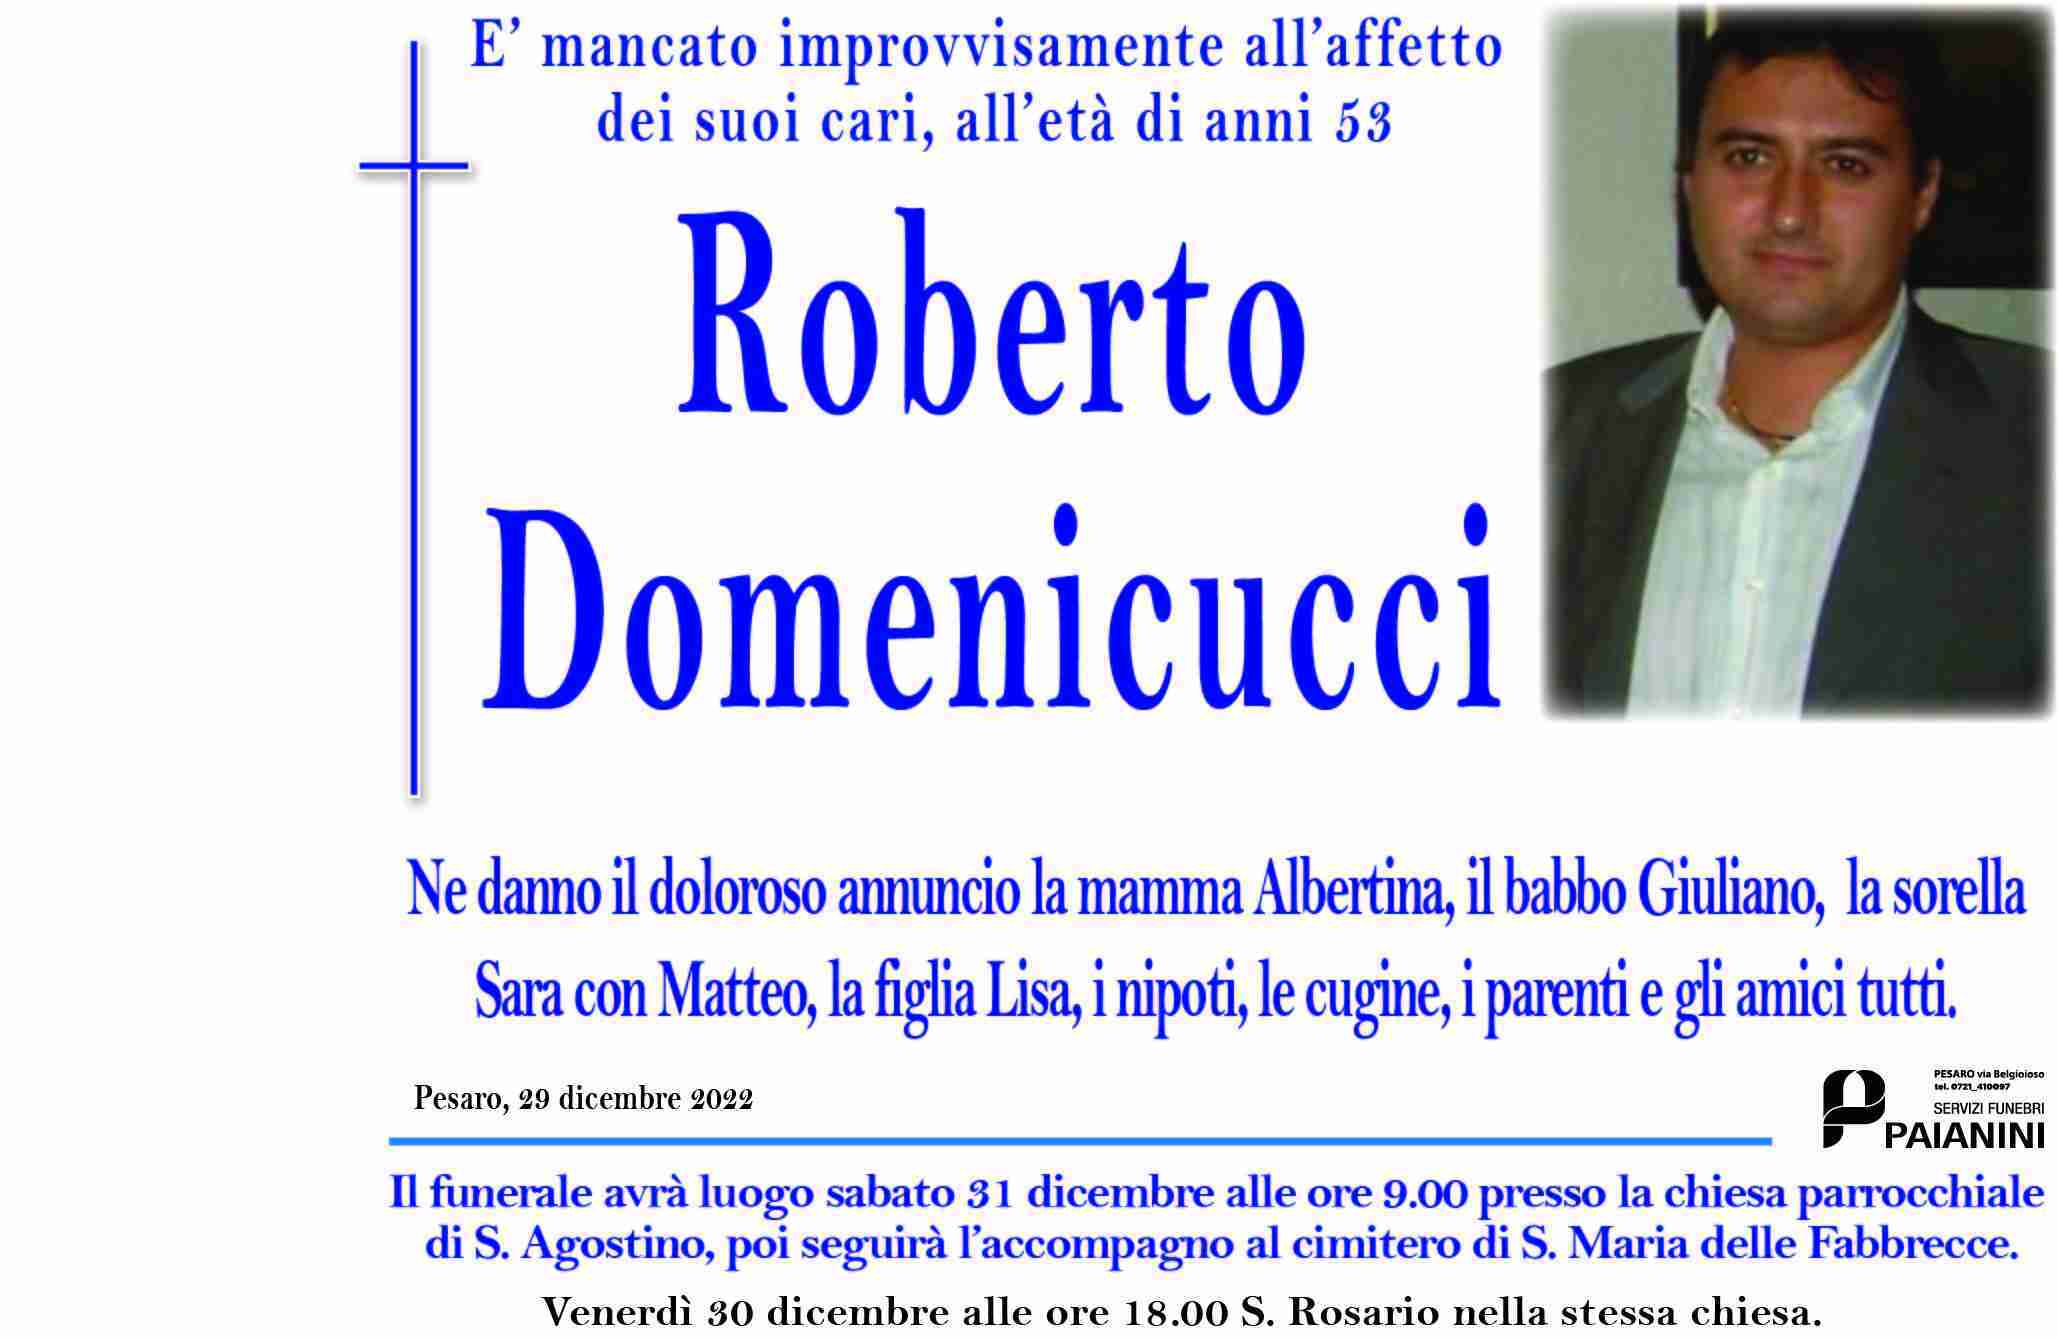 Roberto Domenicucci